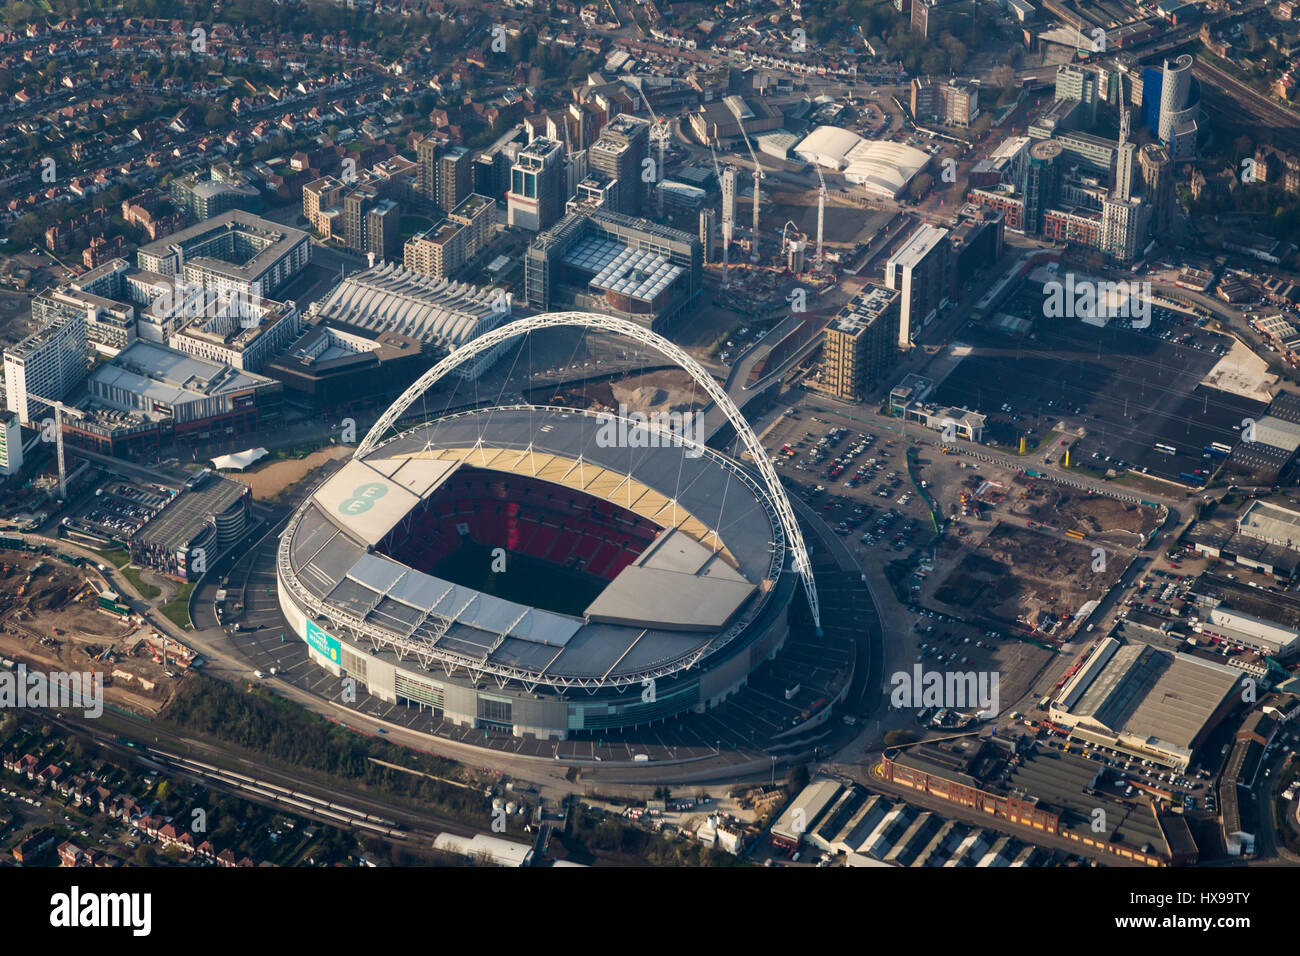 Vue aérienne du stade de football de Wembley, Londres, Angleterre Banque D'Images